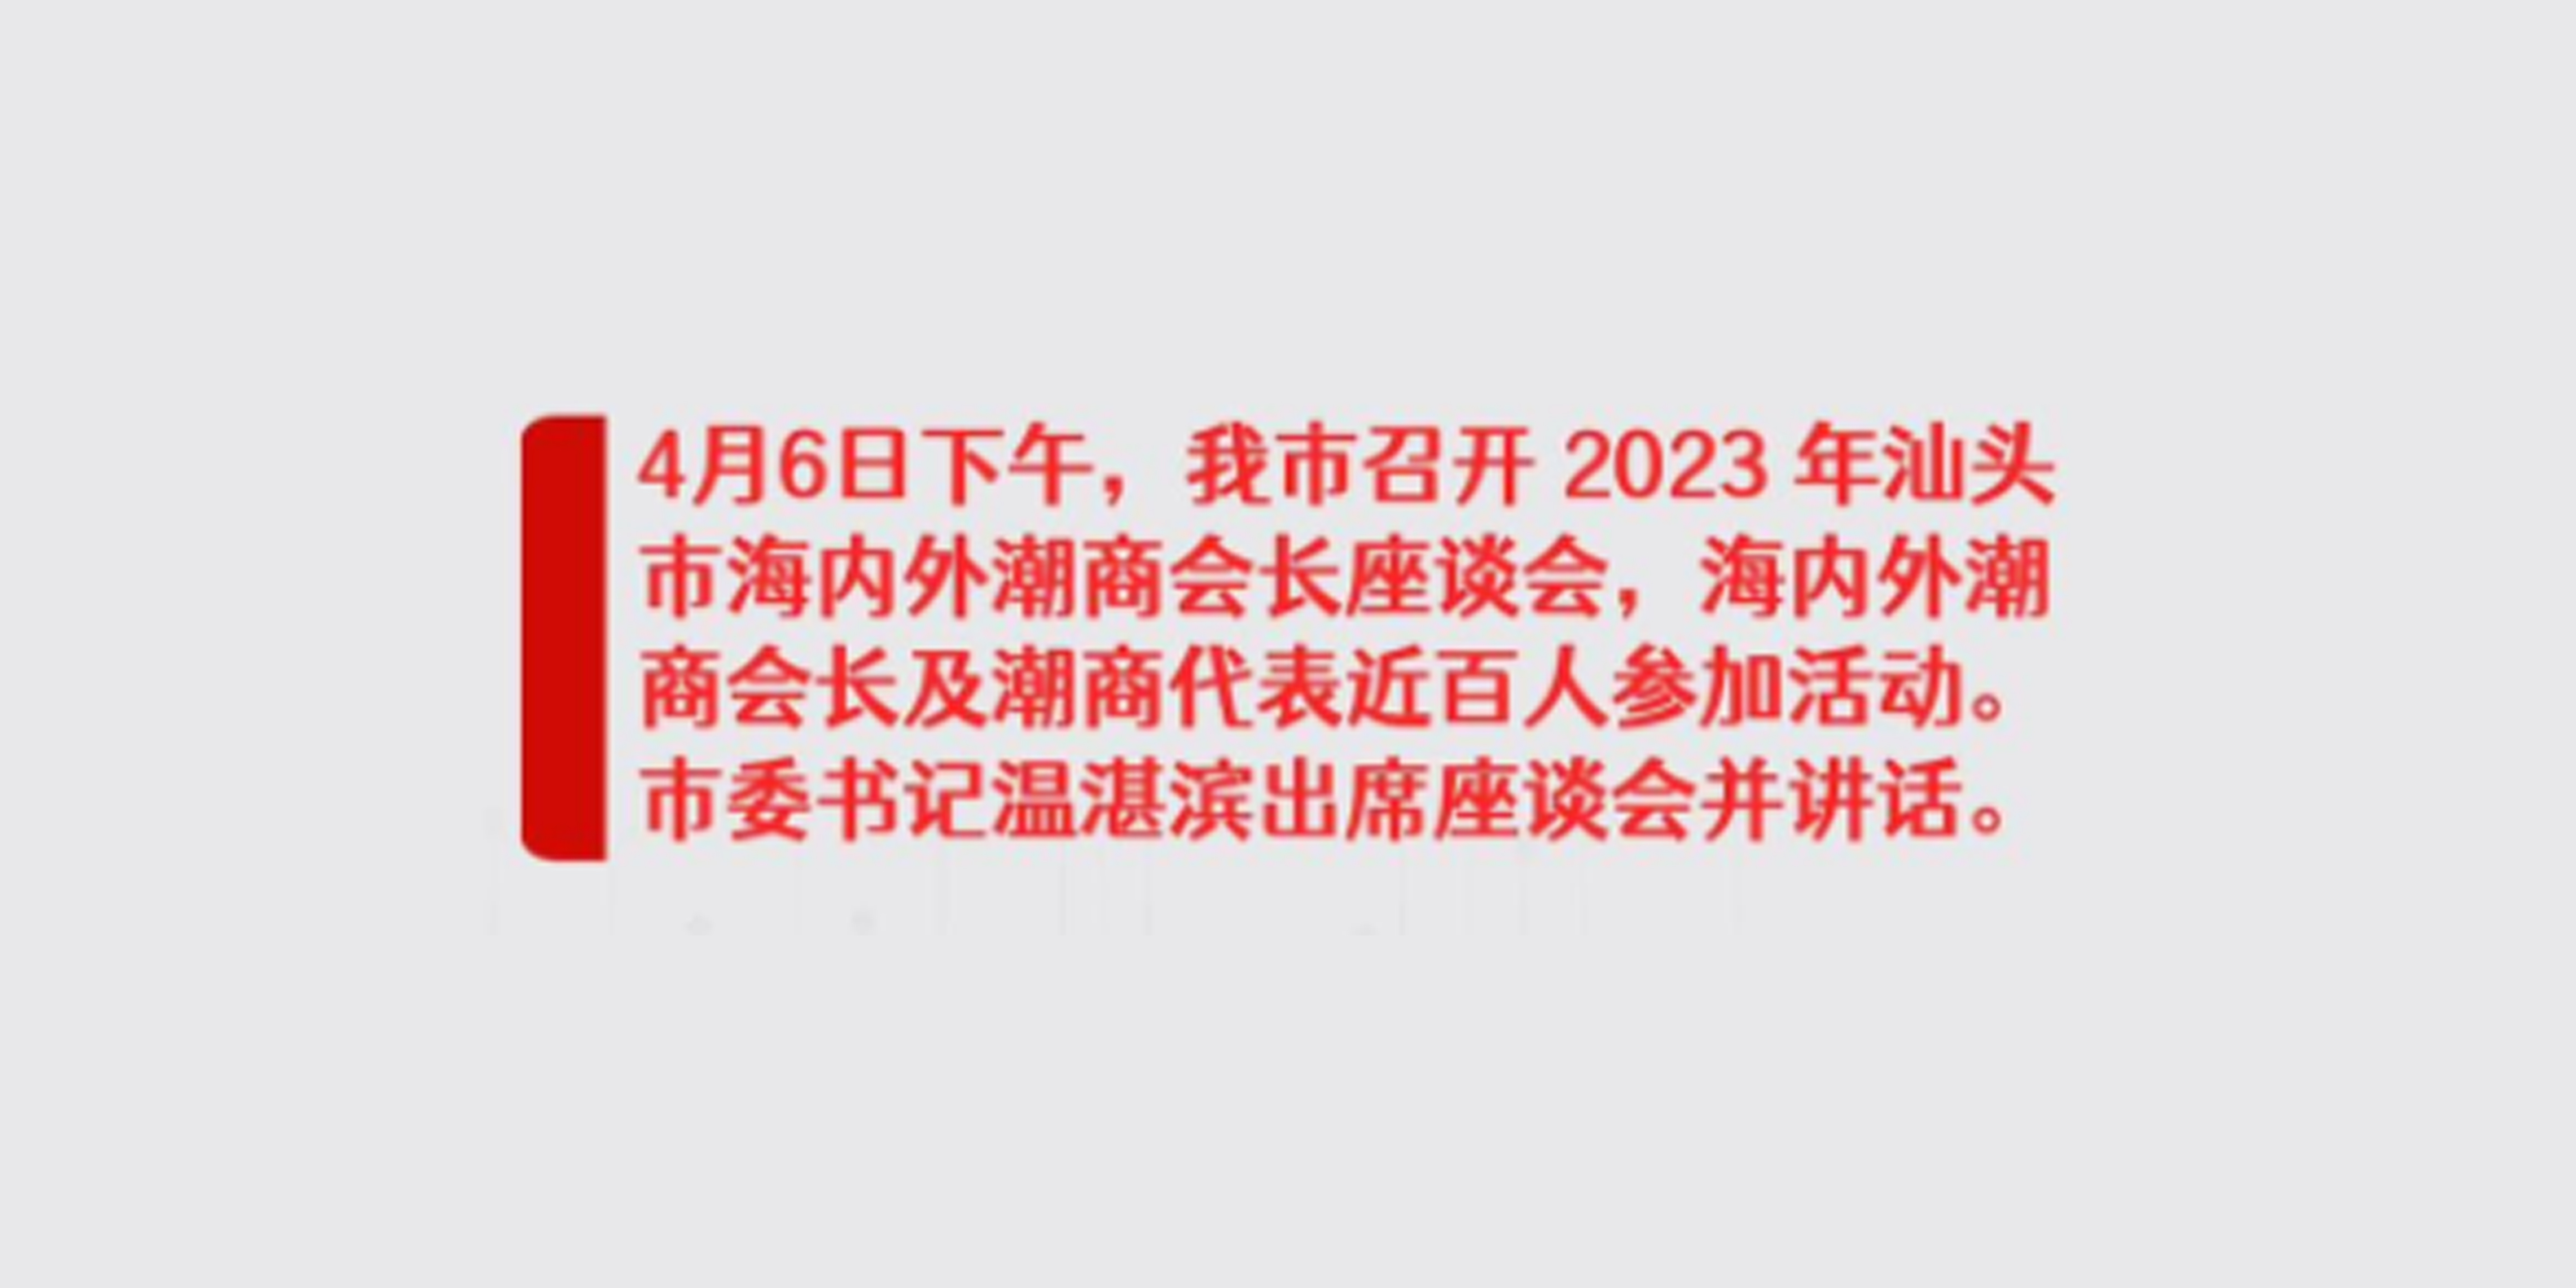 汕頭市召開2023年汕頭市海內外潮商會長座談會